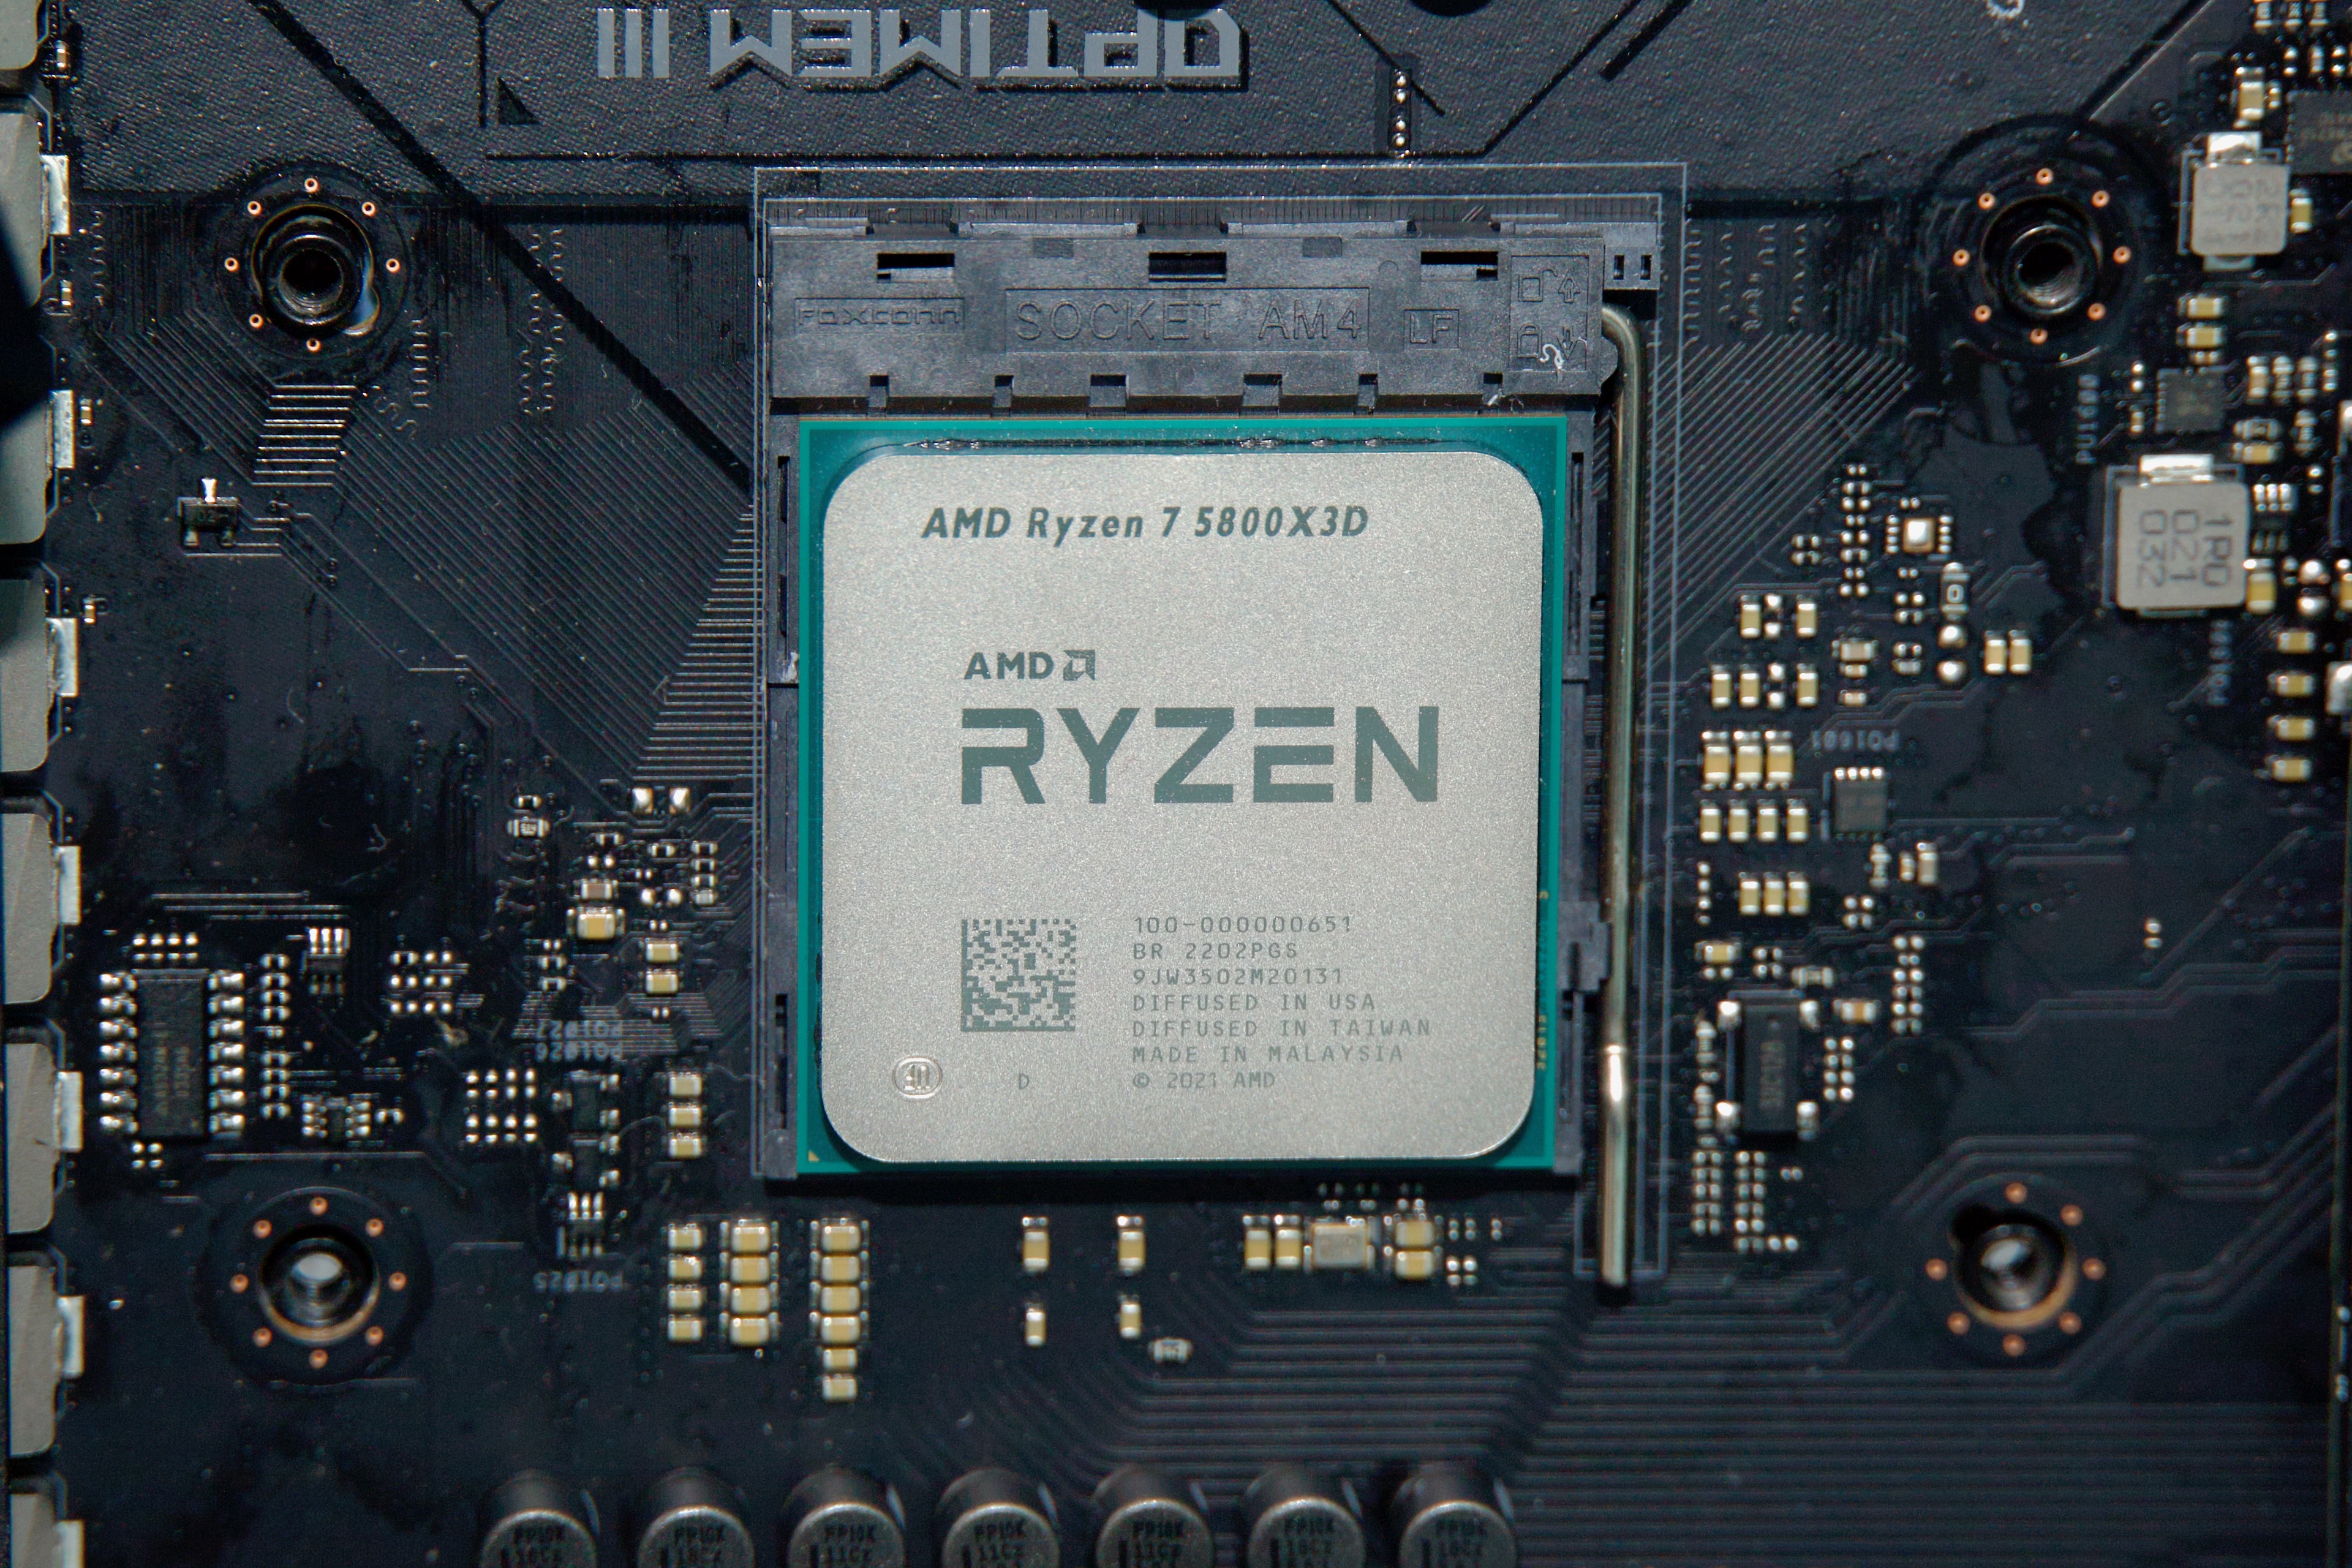 AMD Ryzen 7 5700X vs AMD Ryzen 7 5800X3D vs AMD Ryzen 7 5800X